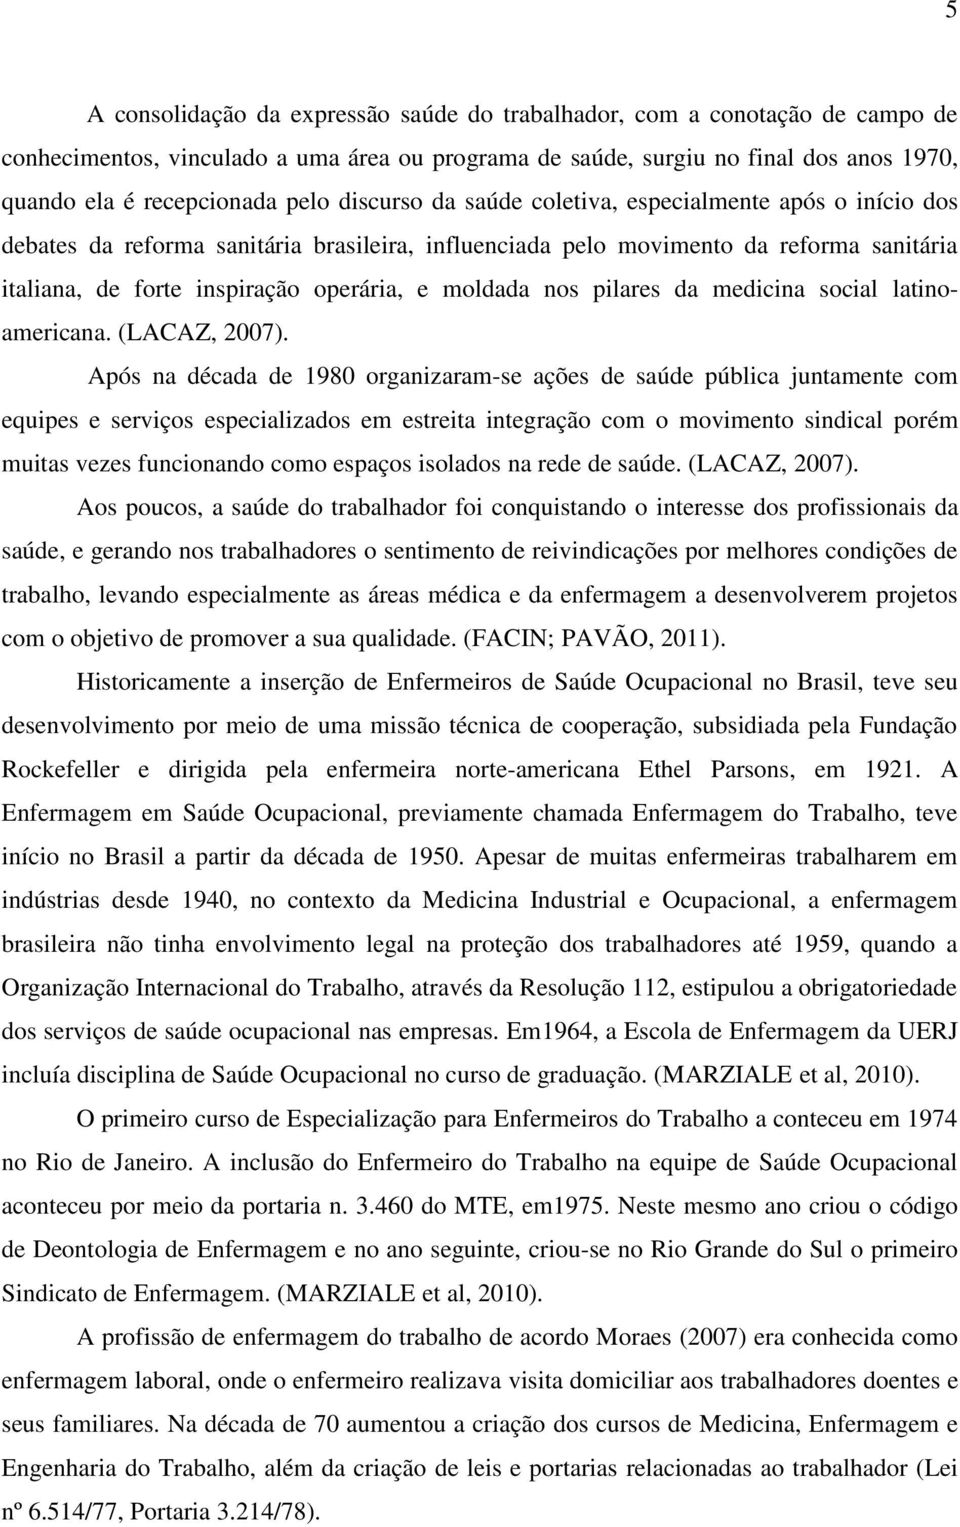 nos pilares da medicina social latinoamericana. (LACAZ, 2007).